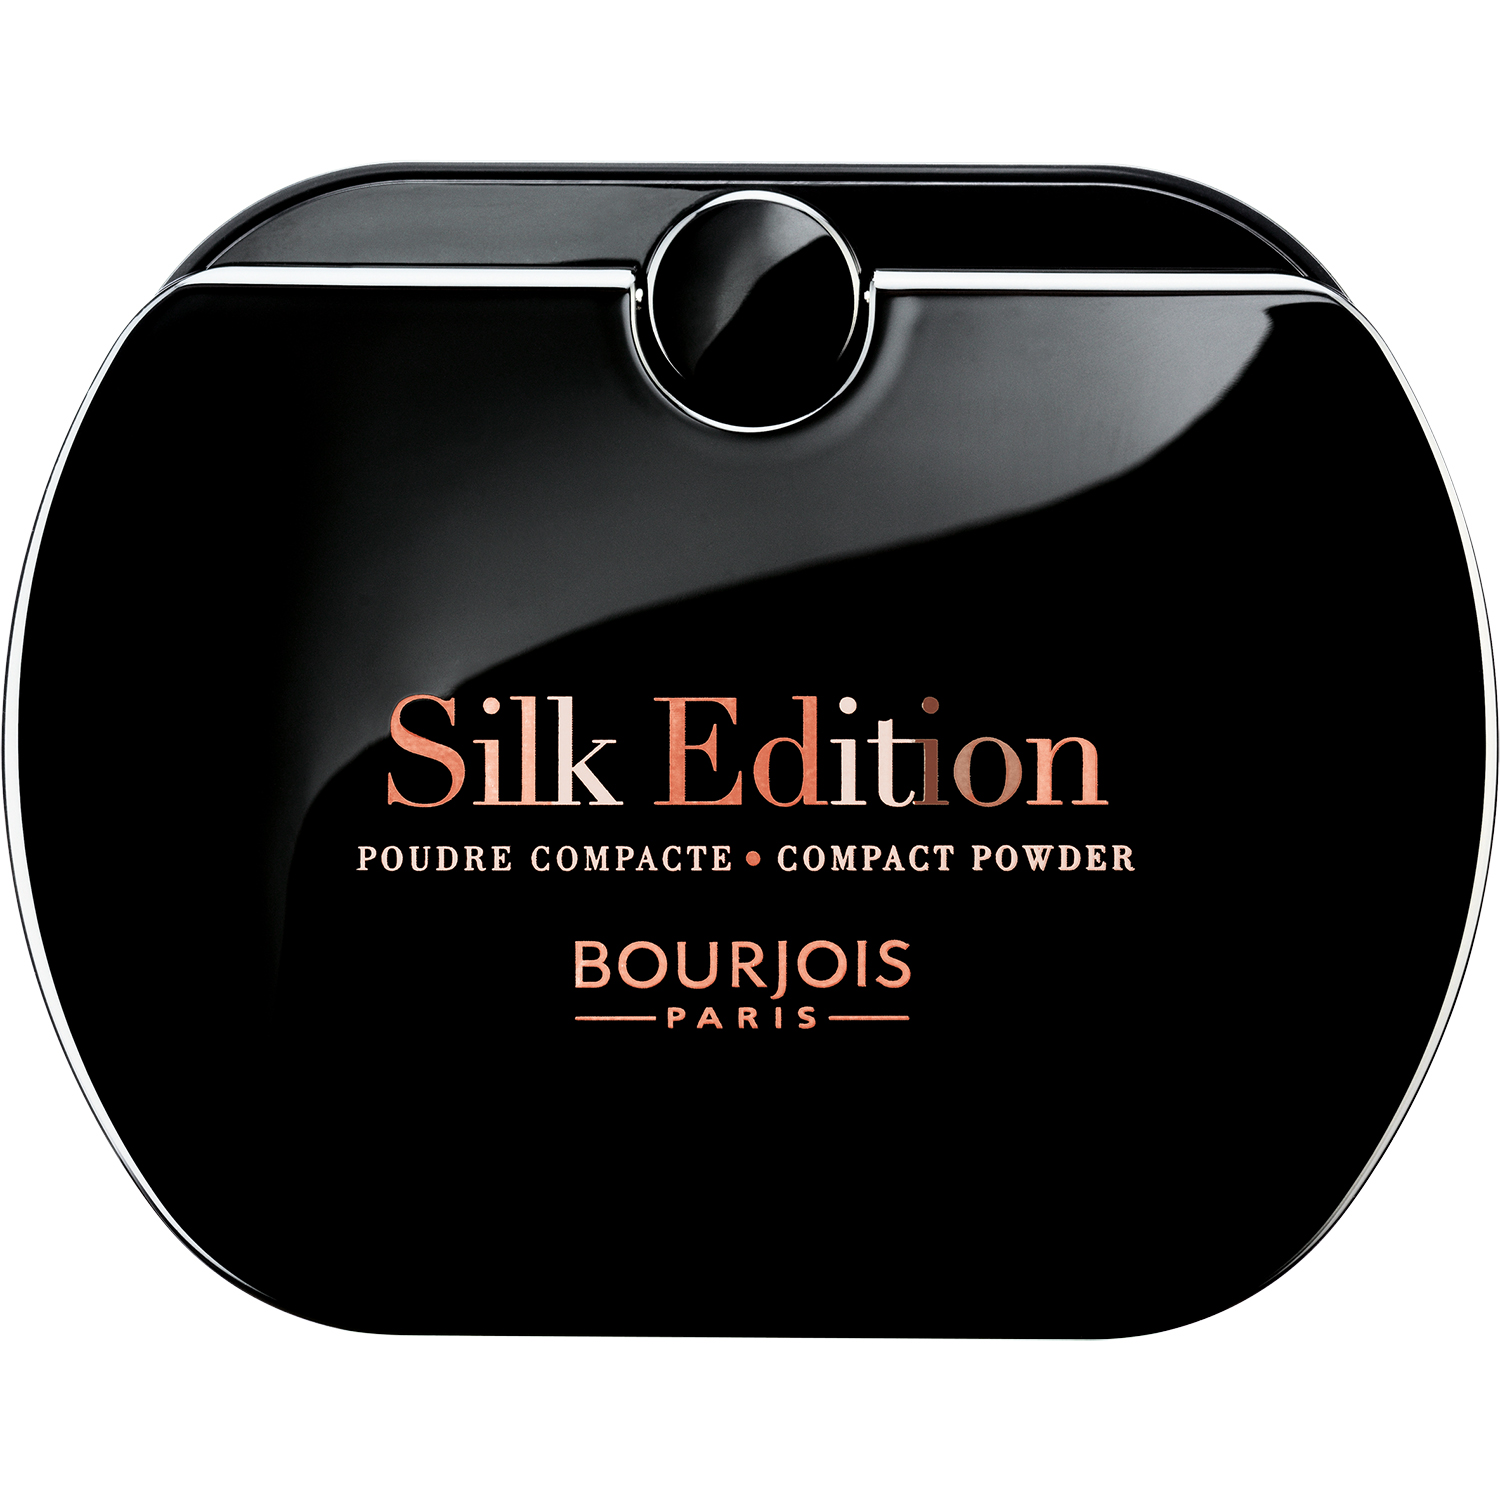 BOURJOIS Пудра компактная для лица, 55 легкий загар / Silk E